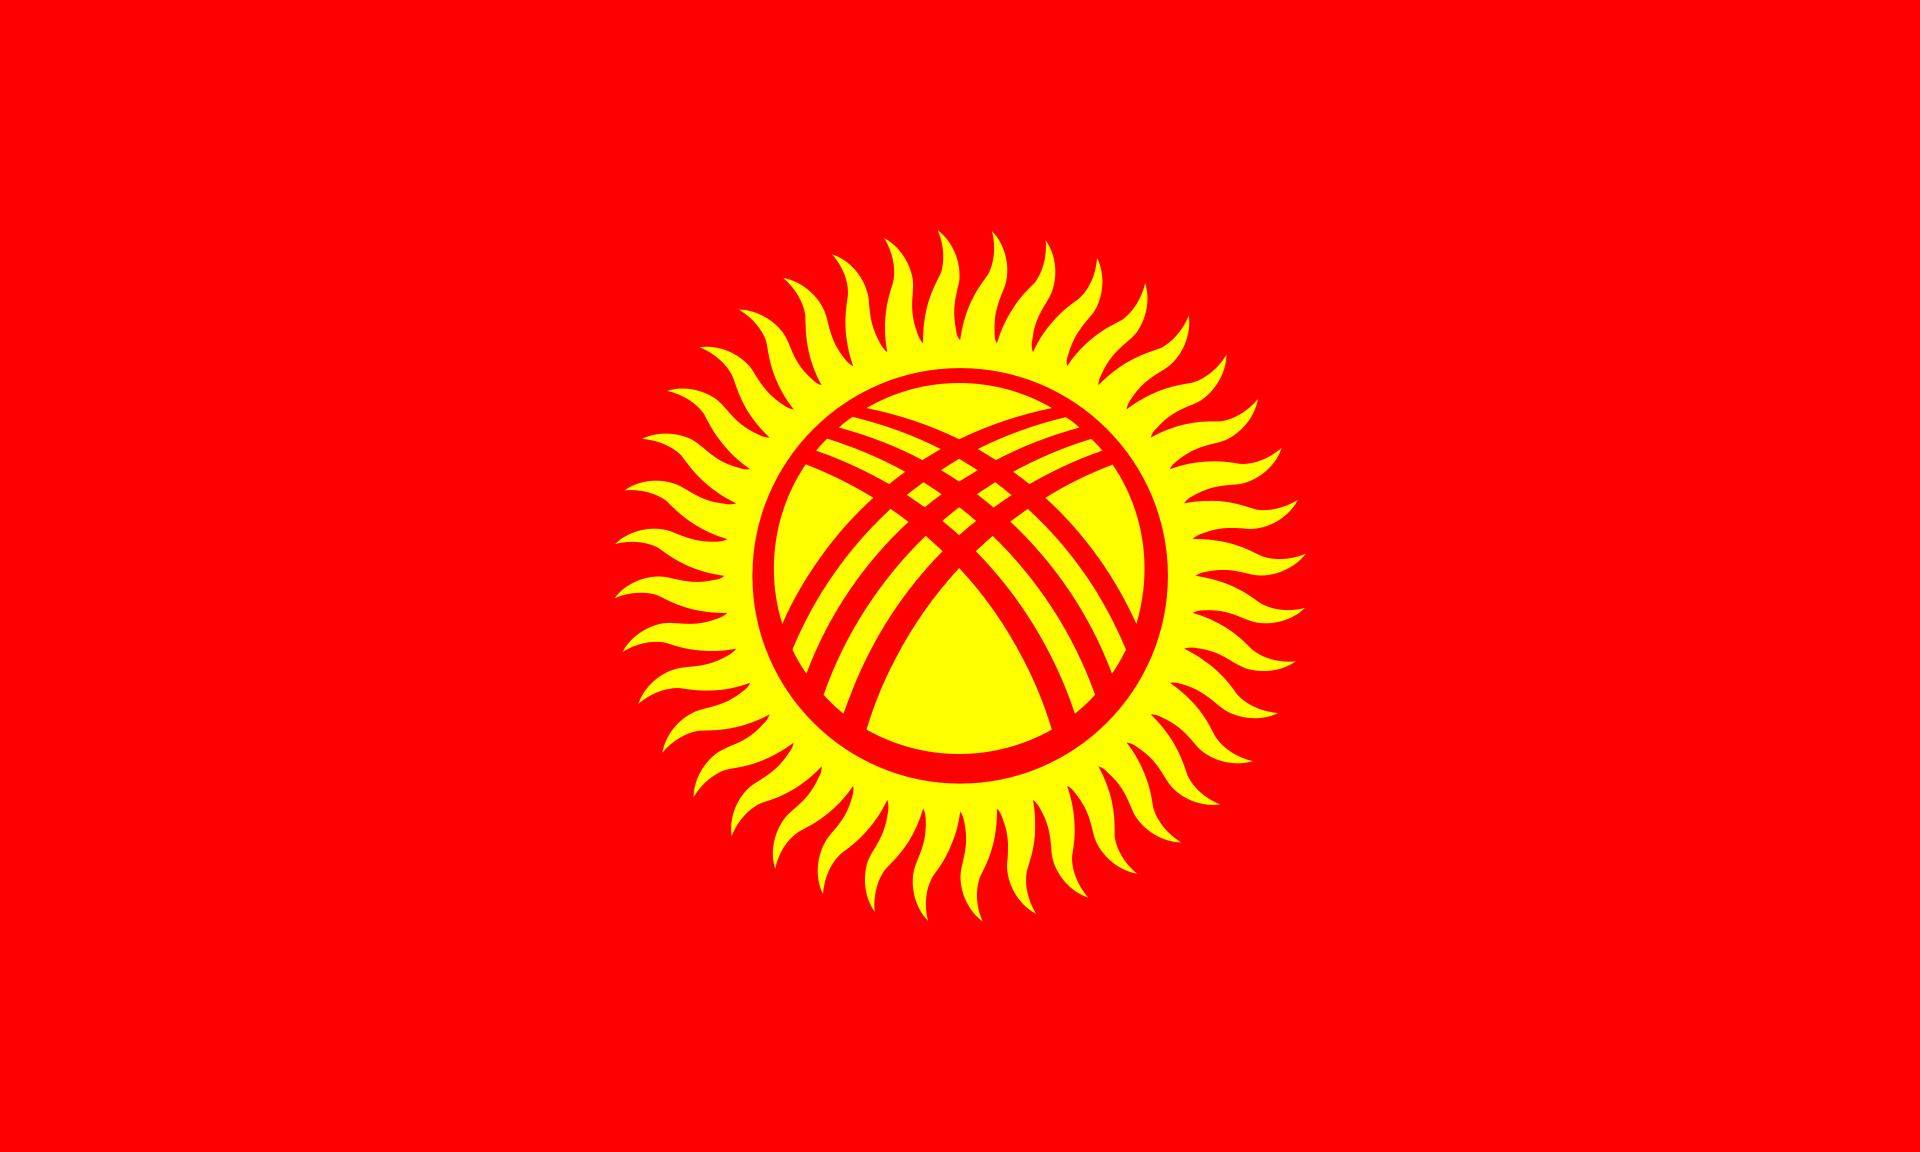 吉尔吉斯斯坦国徽哈萨克斯坦军队大部分为承继自苏联武装力量,获得了